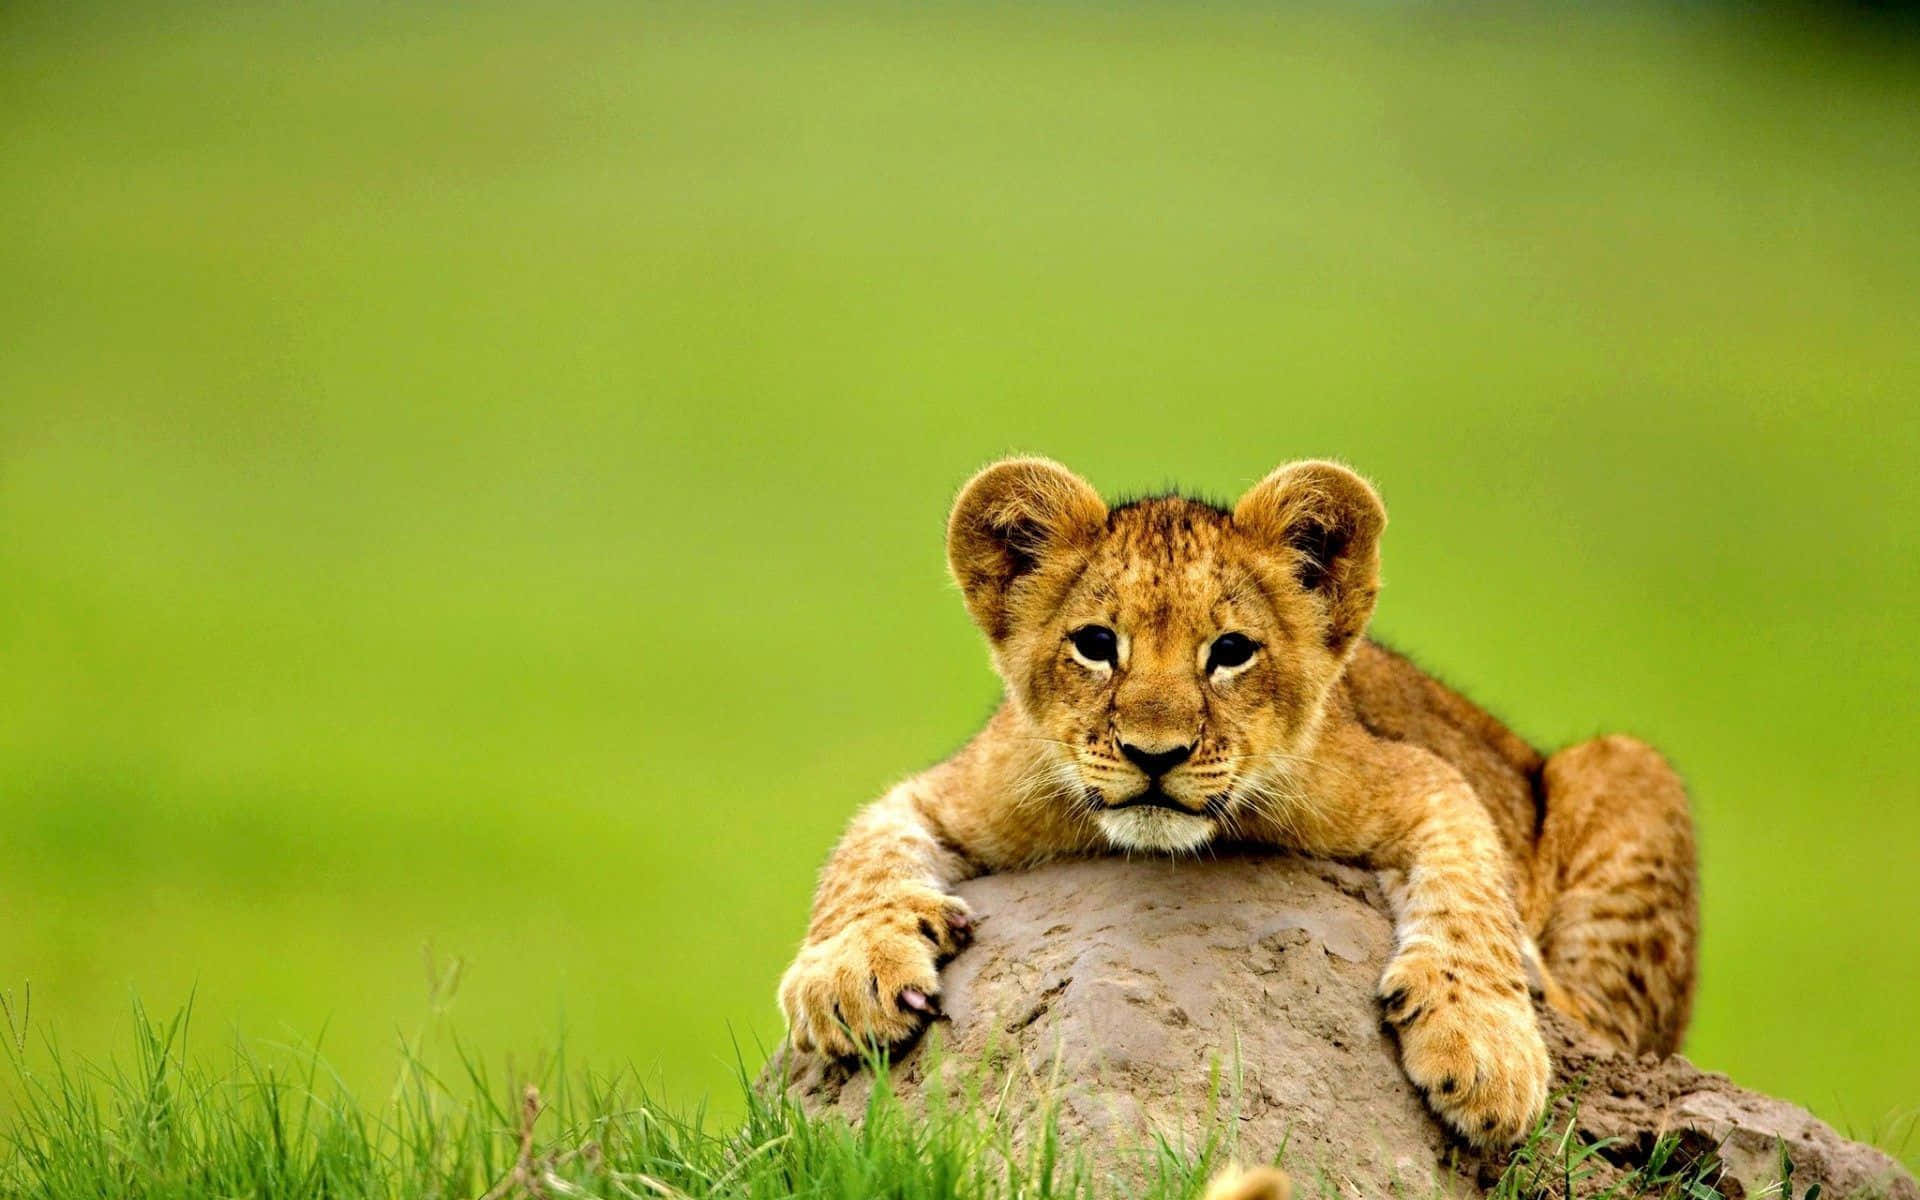 En løveunge sidder på en klippe i græsset.